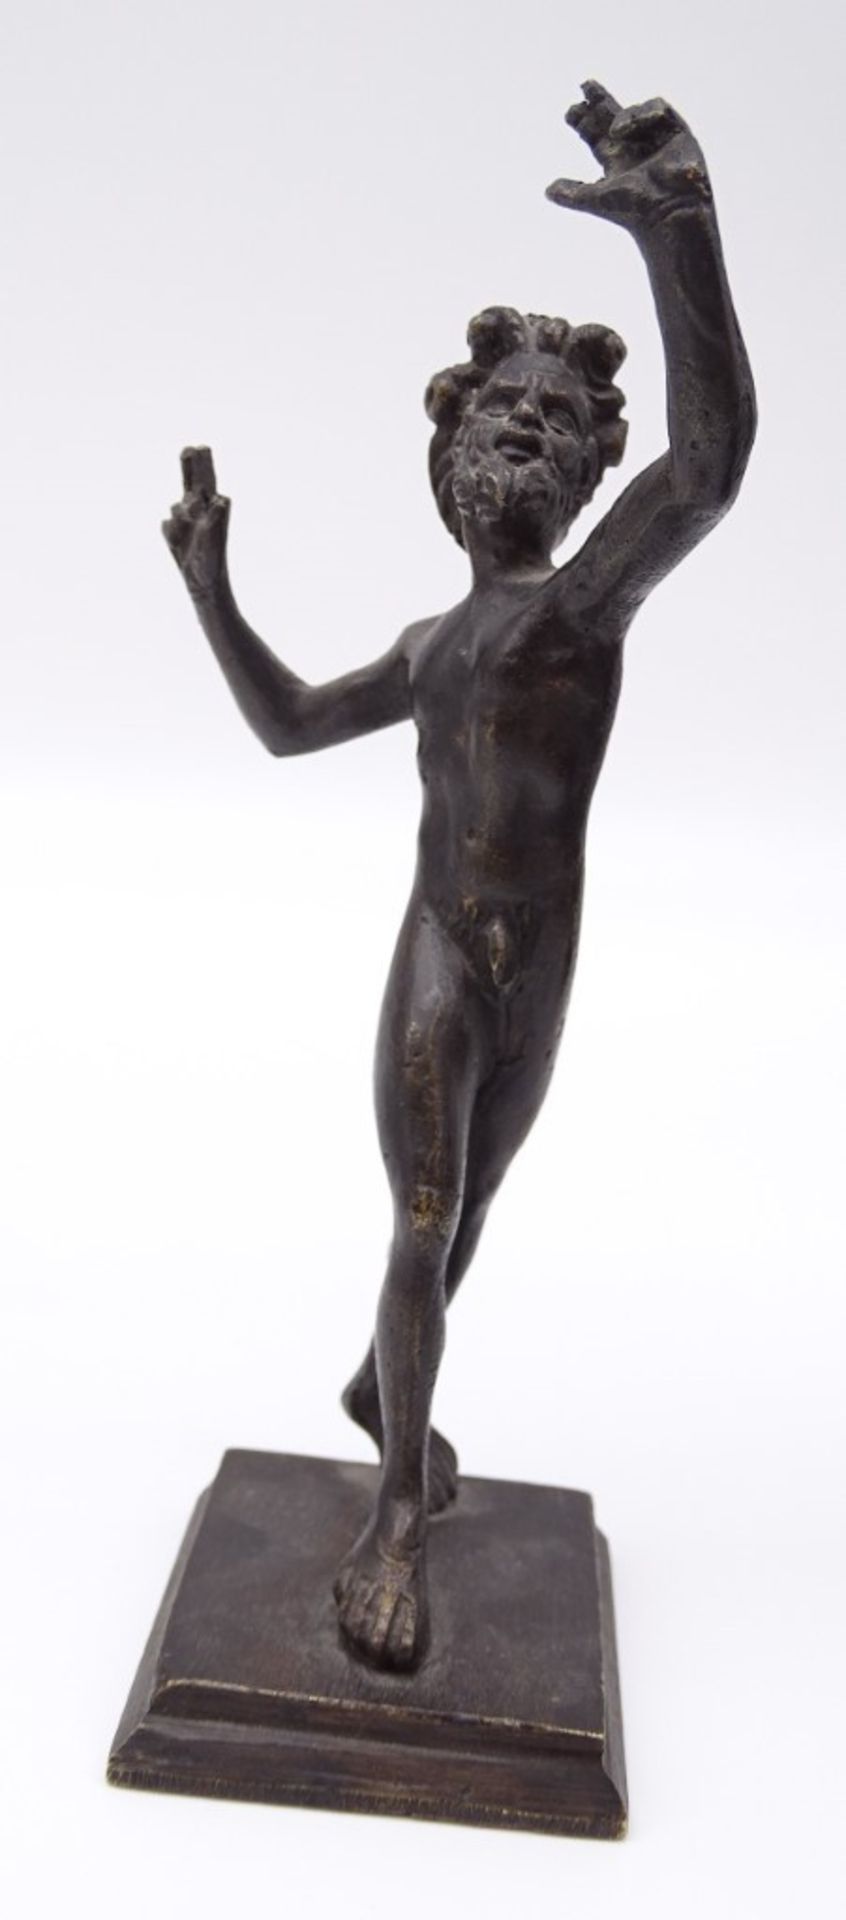 2 x Kopien des Tanzenden Fauns, Casa del Fauno, Pompeij, 1 x Kopie der Venus im Bad, Slg. Barsanti, - Bild 4 aus 8